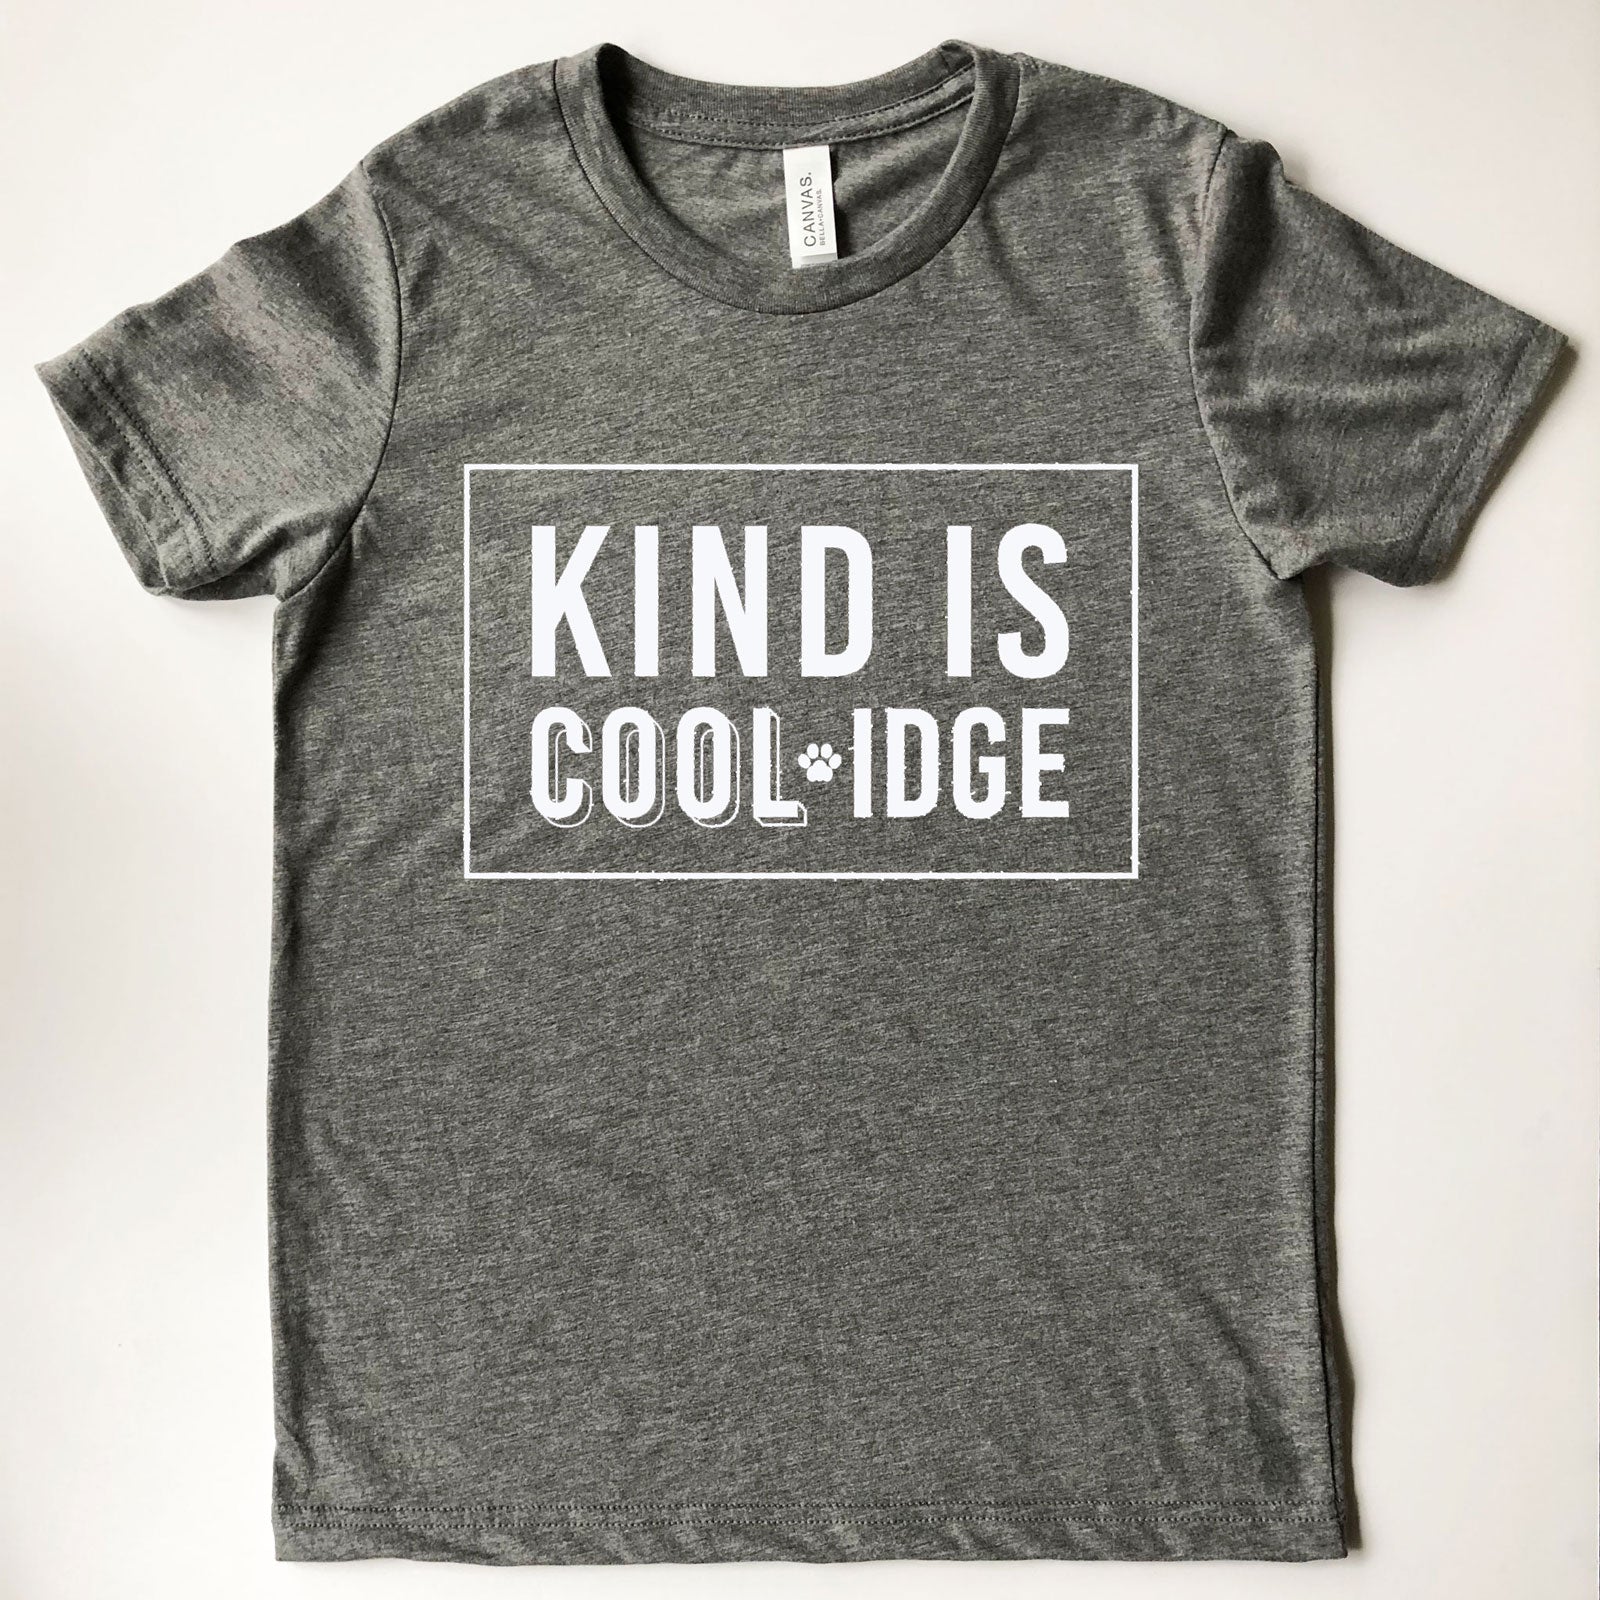 Coolidge Adult 'Kind Is Coolidge' Tee - White Design